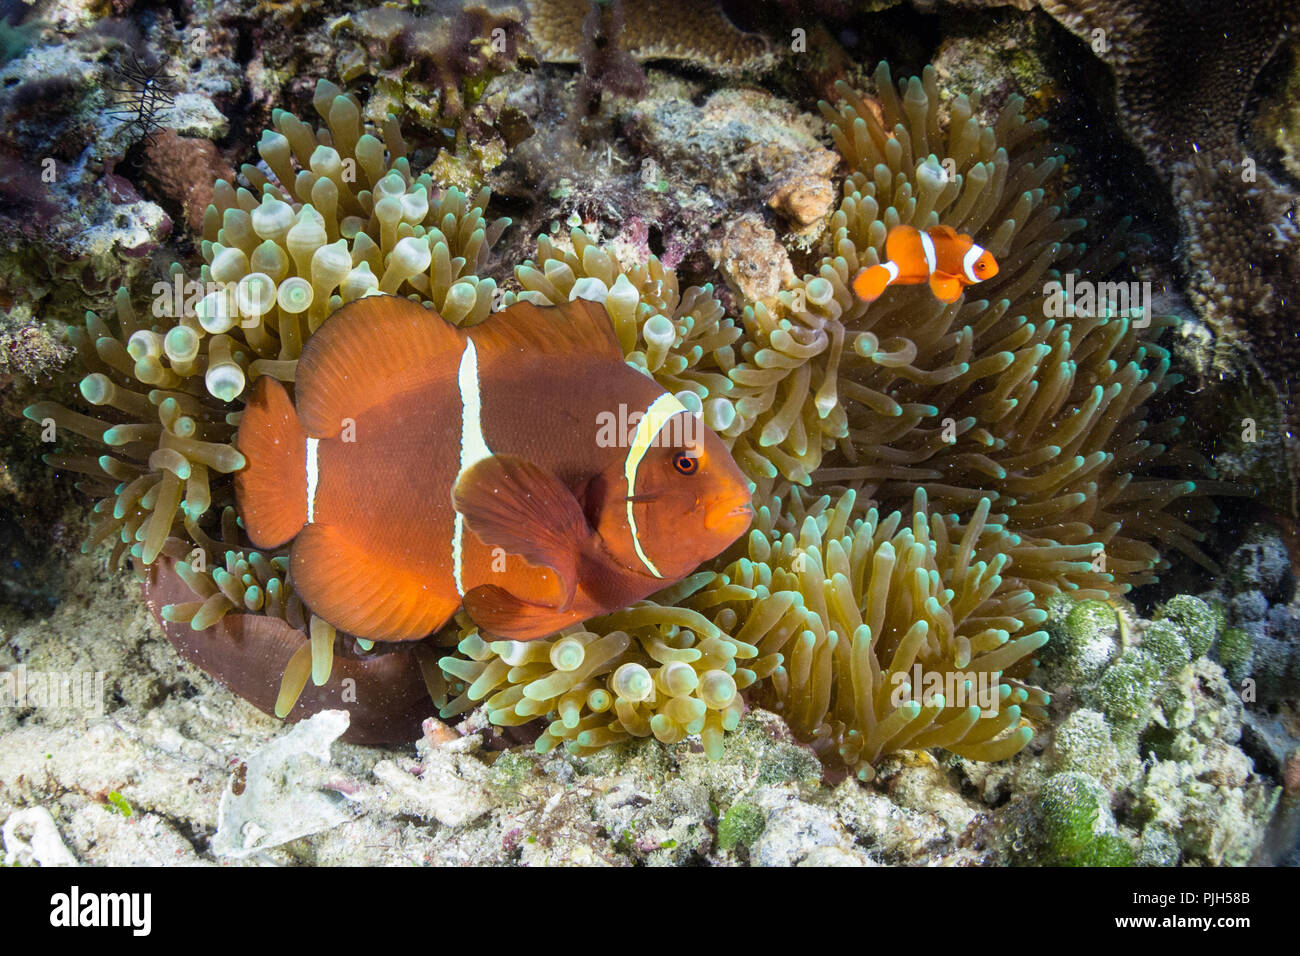 Adultos, Premnas biaculeatus spinecheek anemonefish, Sebayur Island, el Parque Nacional de Komodo, Flores Mar, Indonesia Foto de stock